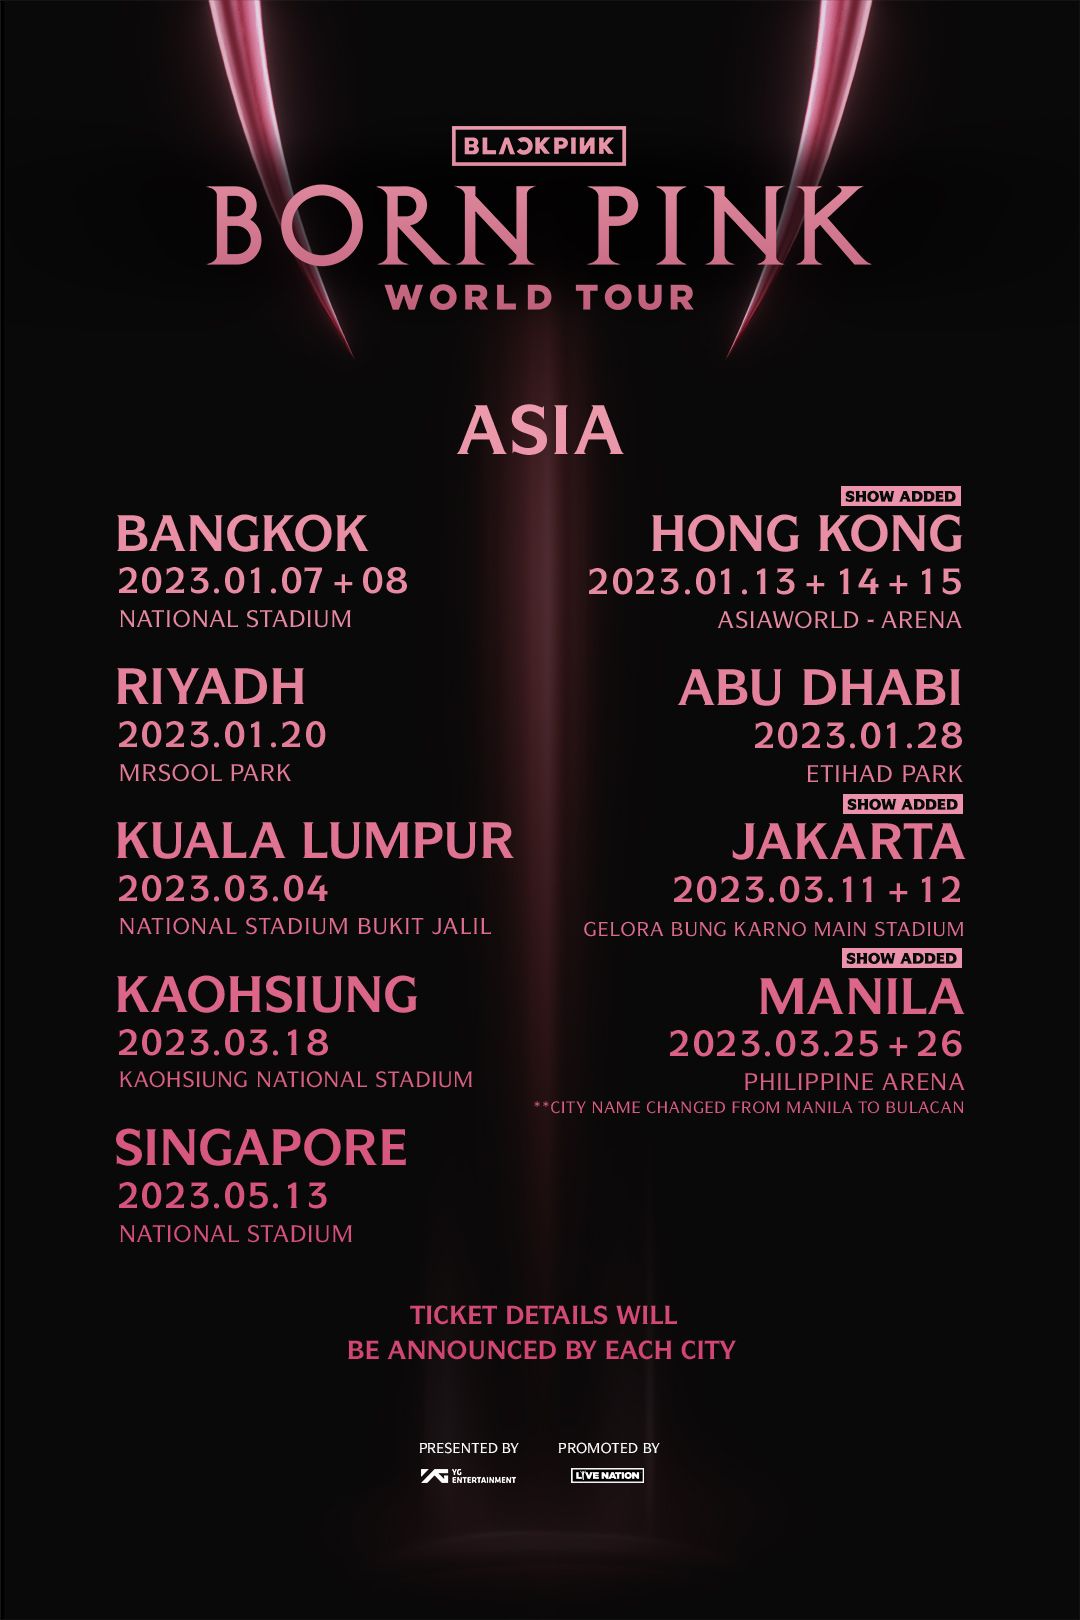 Jadwal dan Lokasi BORN PINK World Tour BLACKPINK Wilayah Asia, di